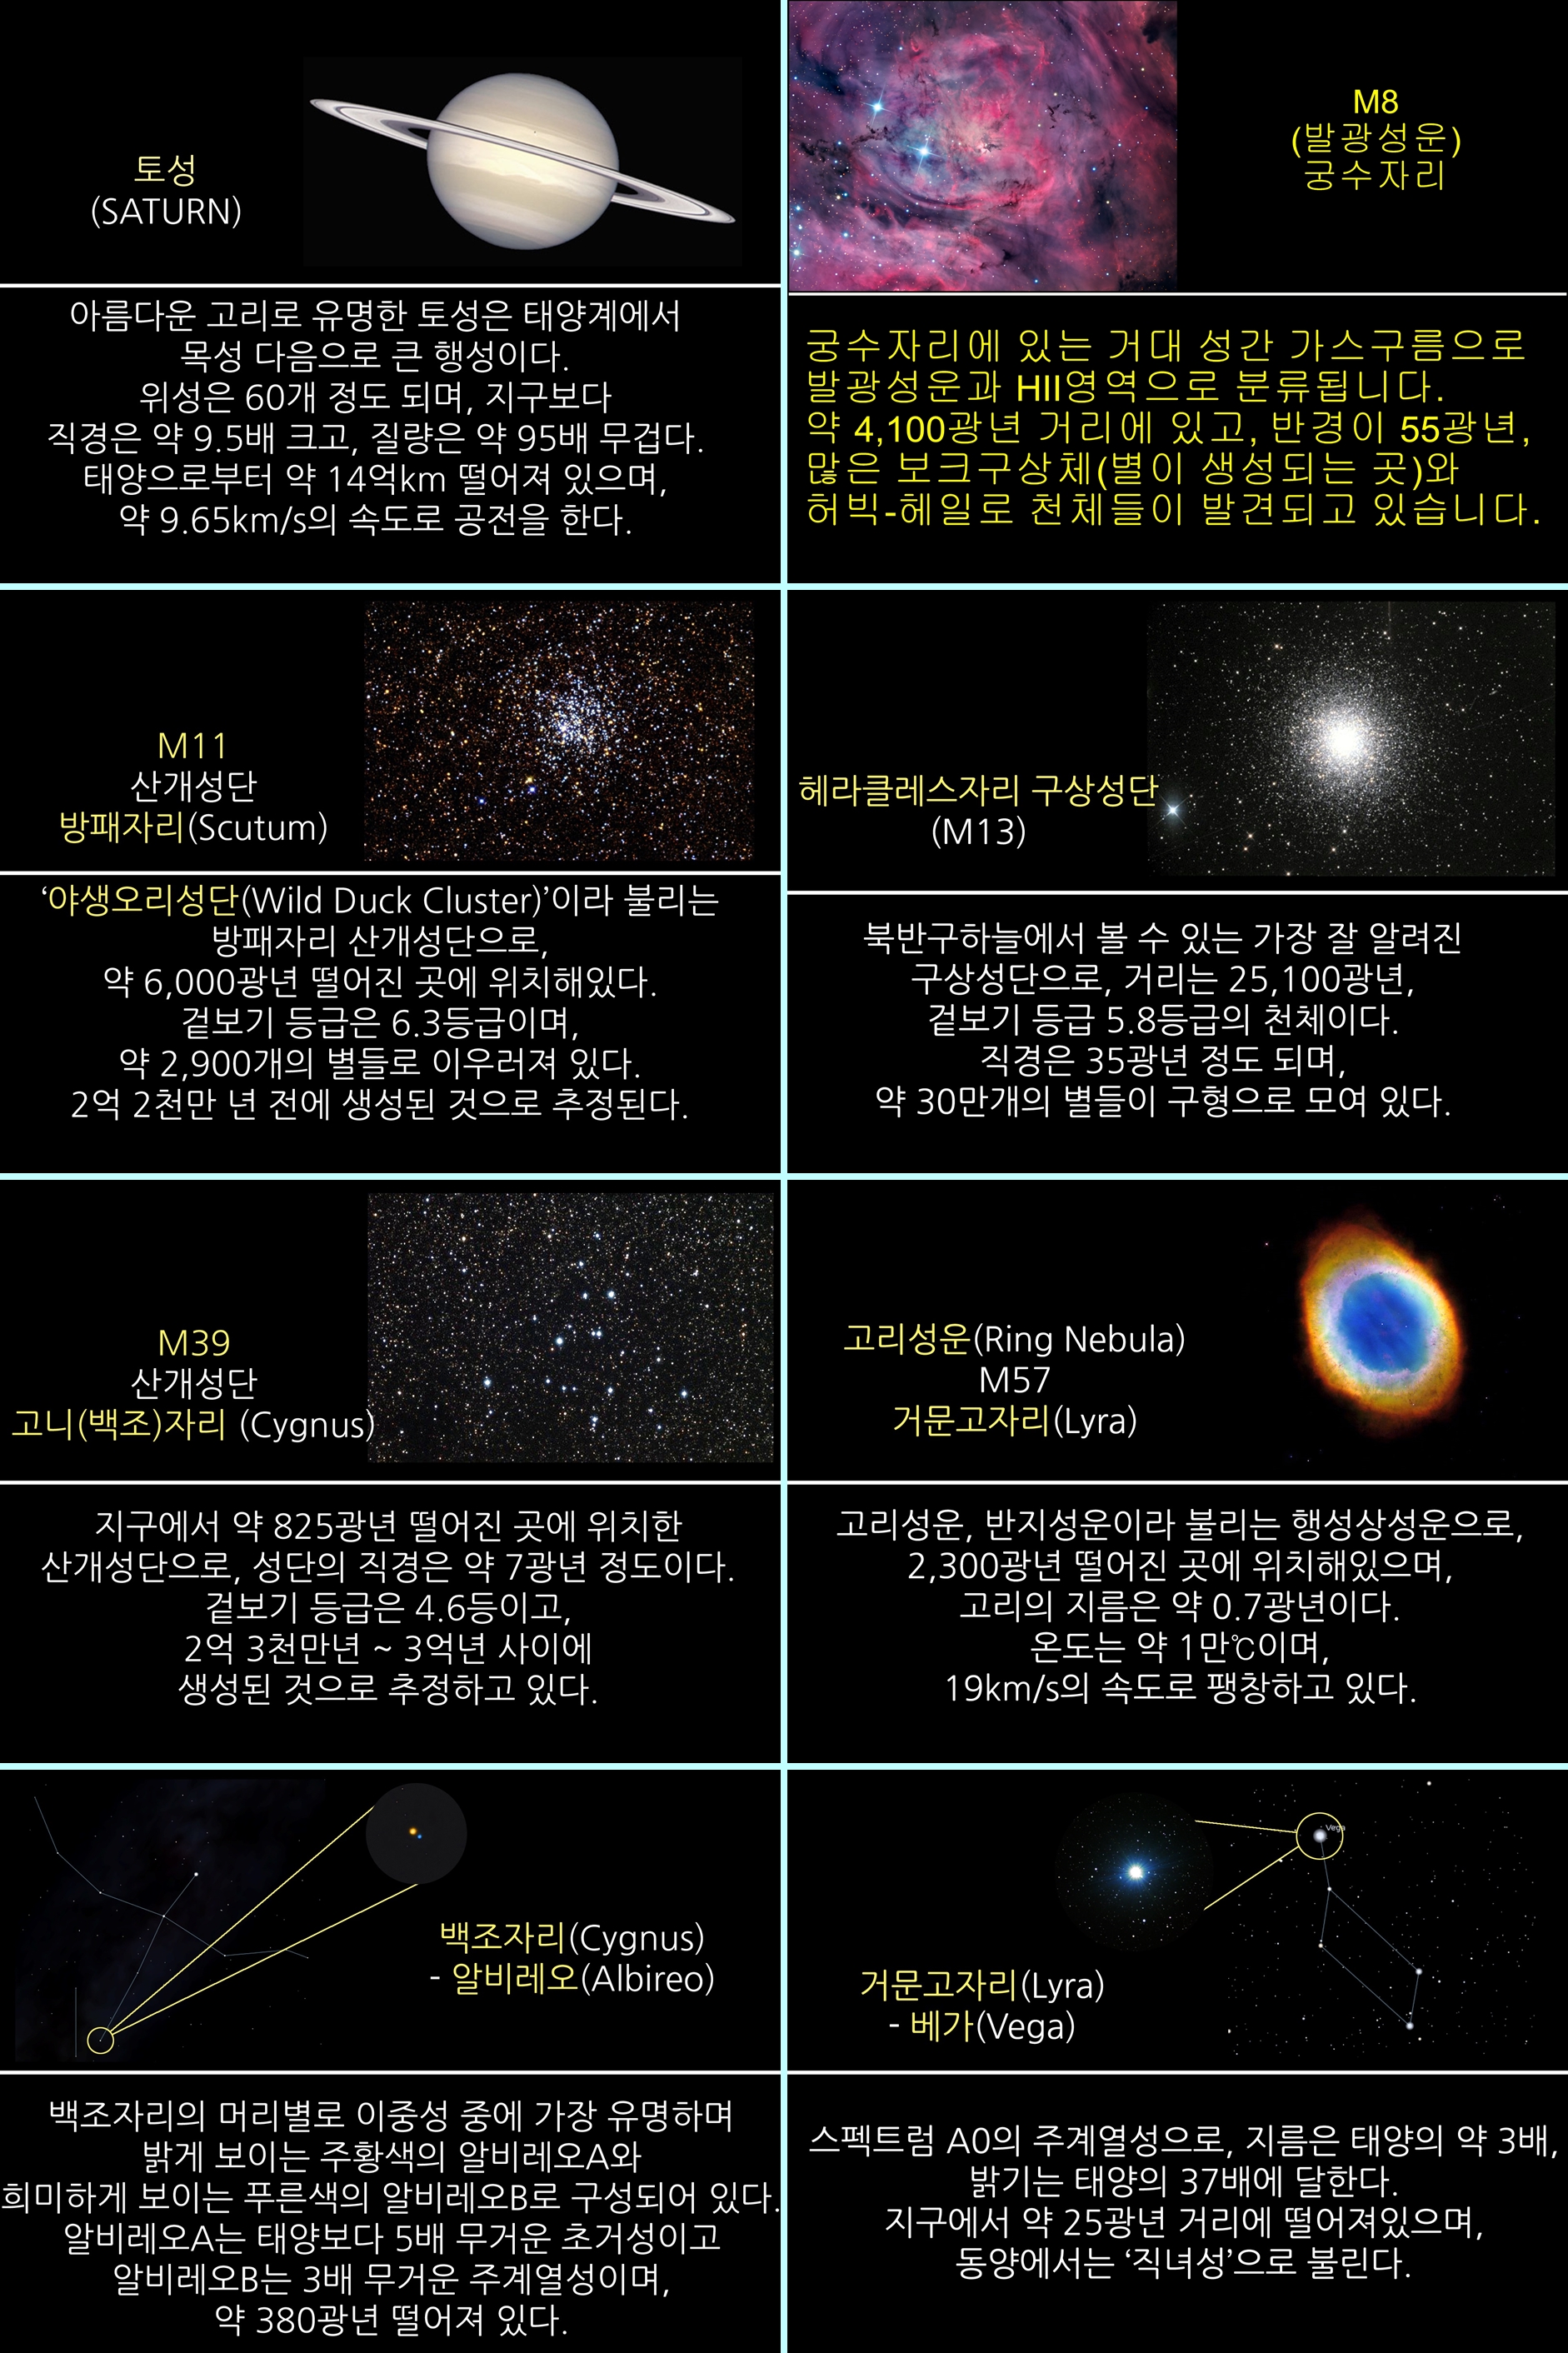 2017년 8월 주요 천체관측 대상